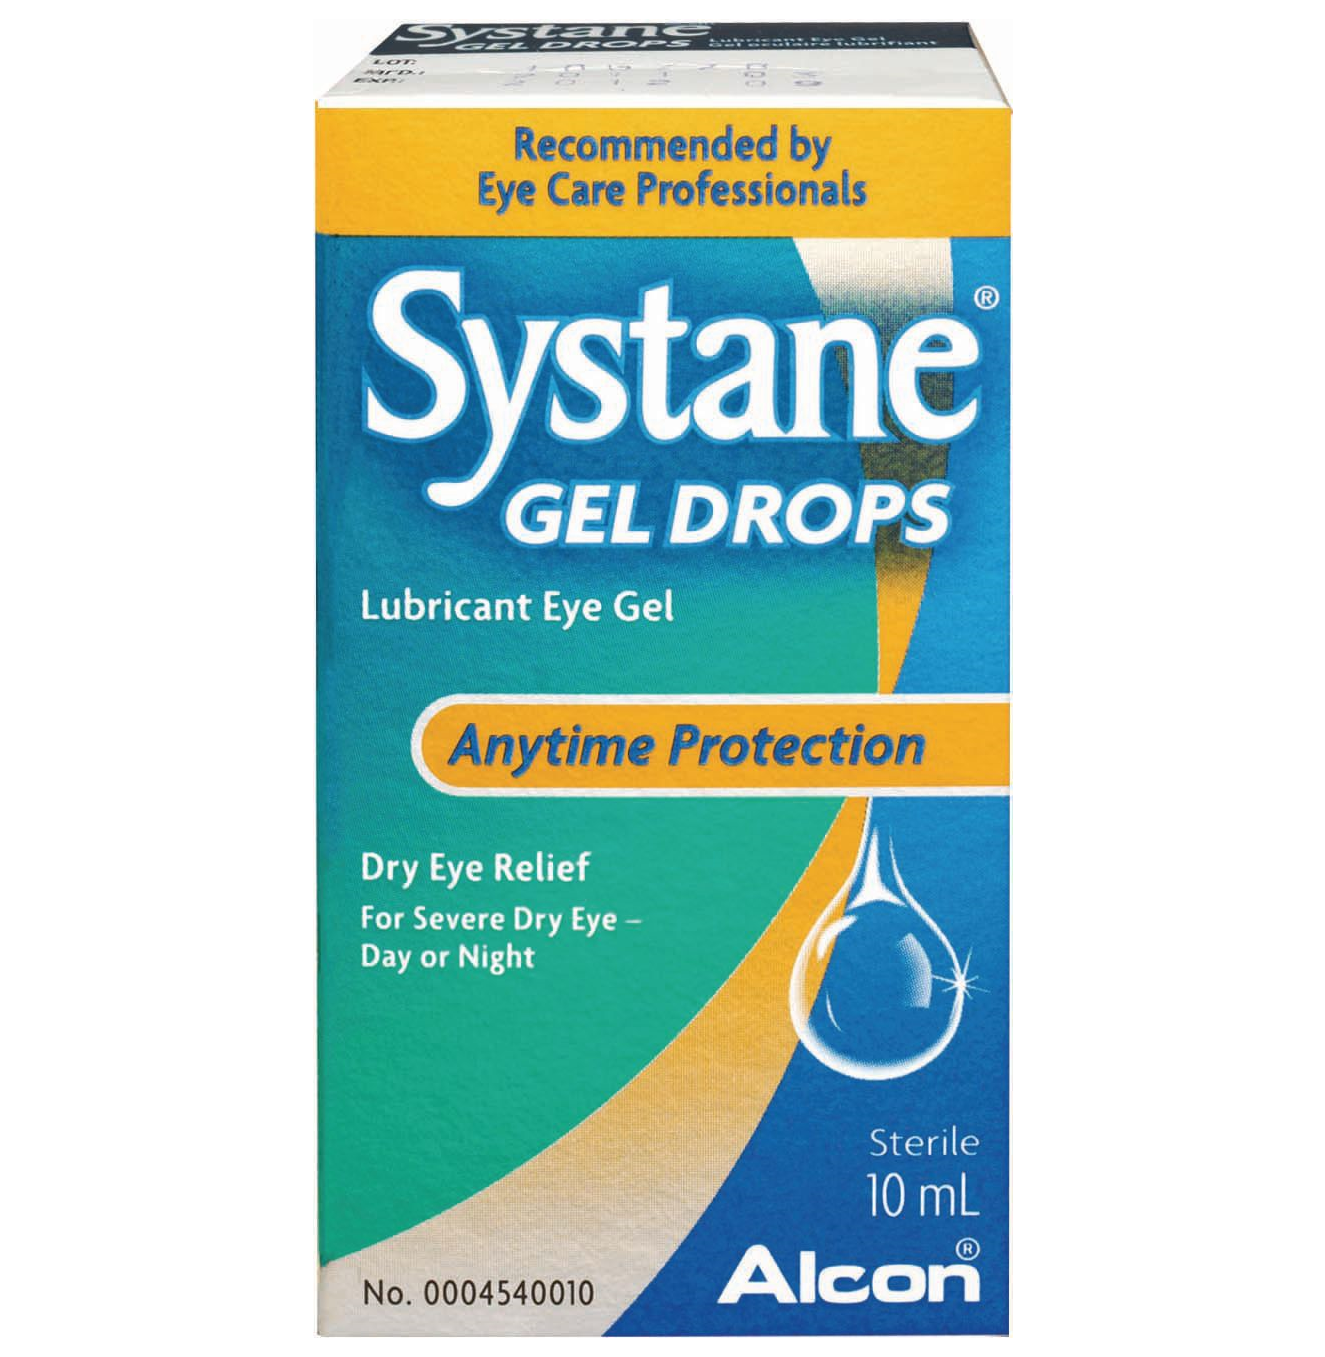 Systane Gel Drops Lubricant Eye Gel 10mL